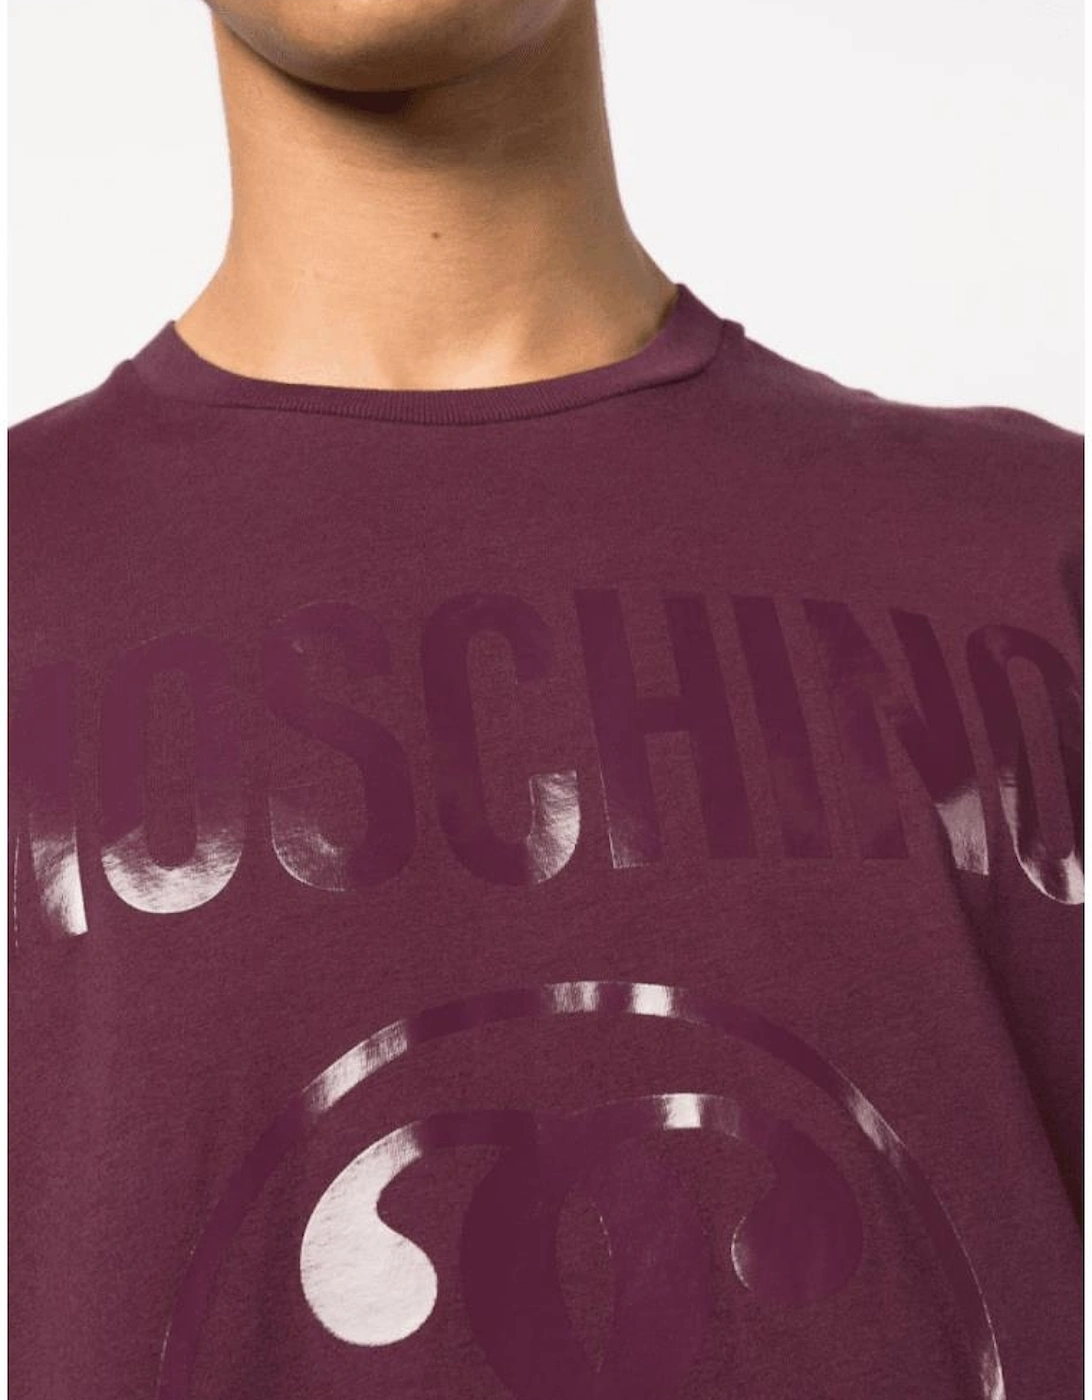 Milano Print Logo Slim Fit Burgundy T-Shirt